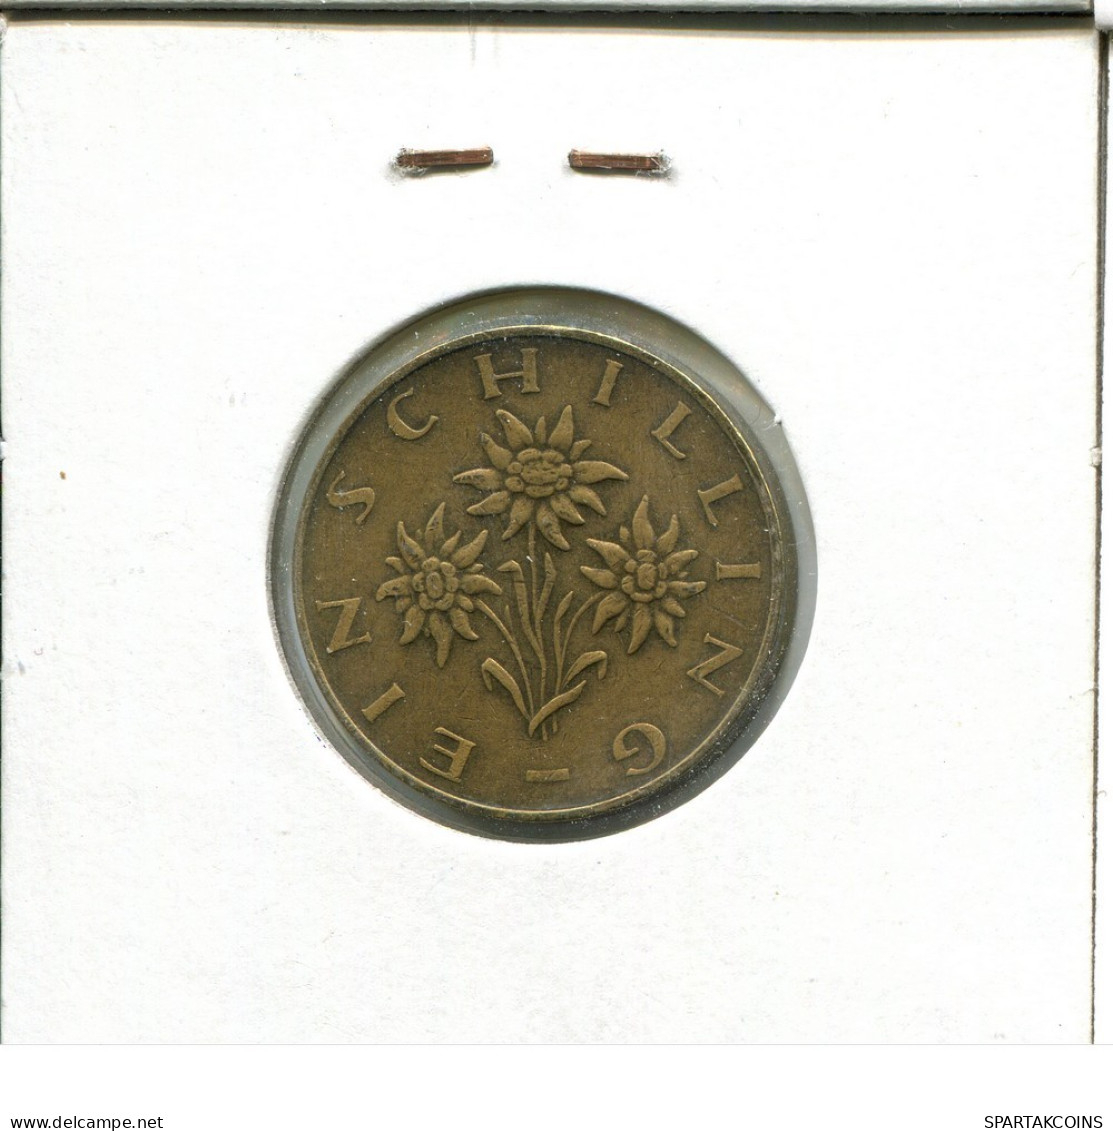 1 SCHILLING 1973 AUSTRIA Coin #AT633.U.A - Austria